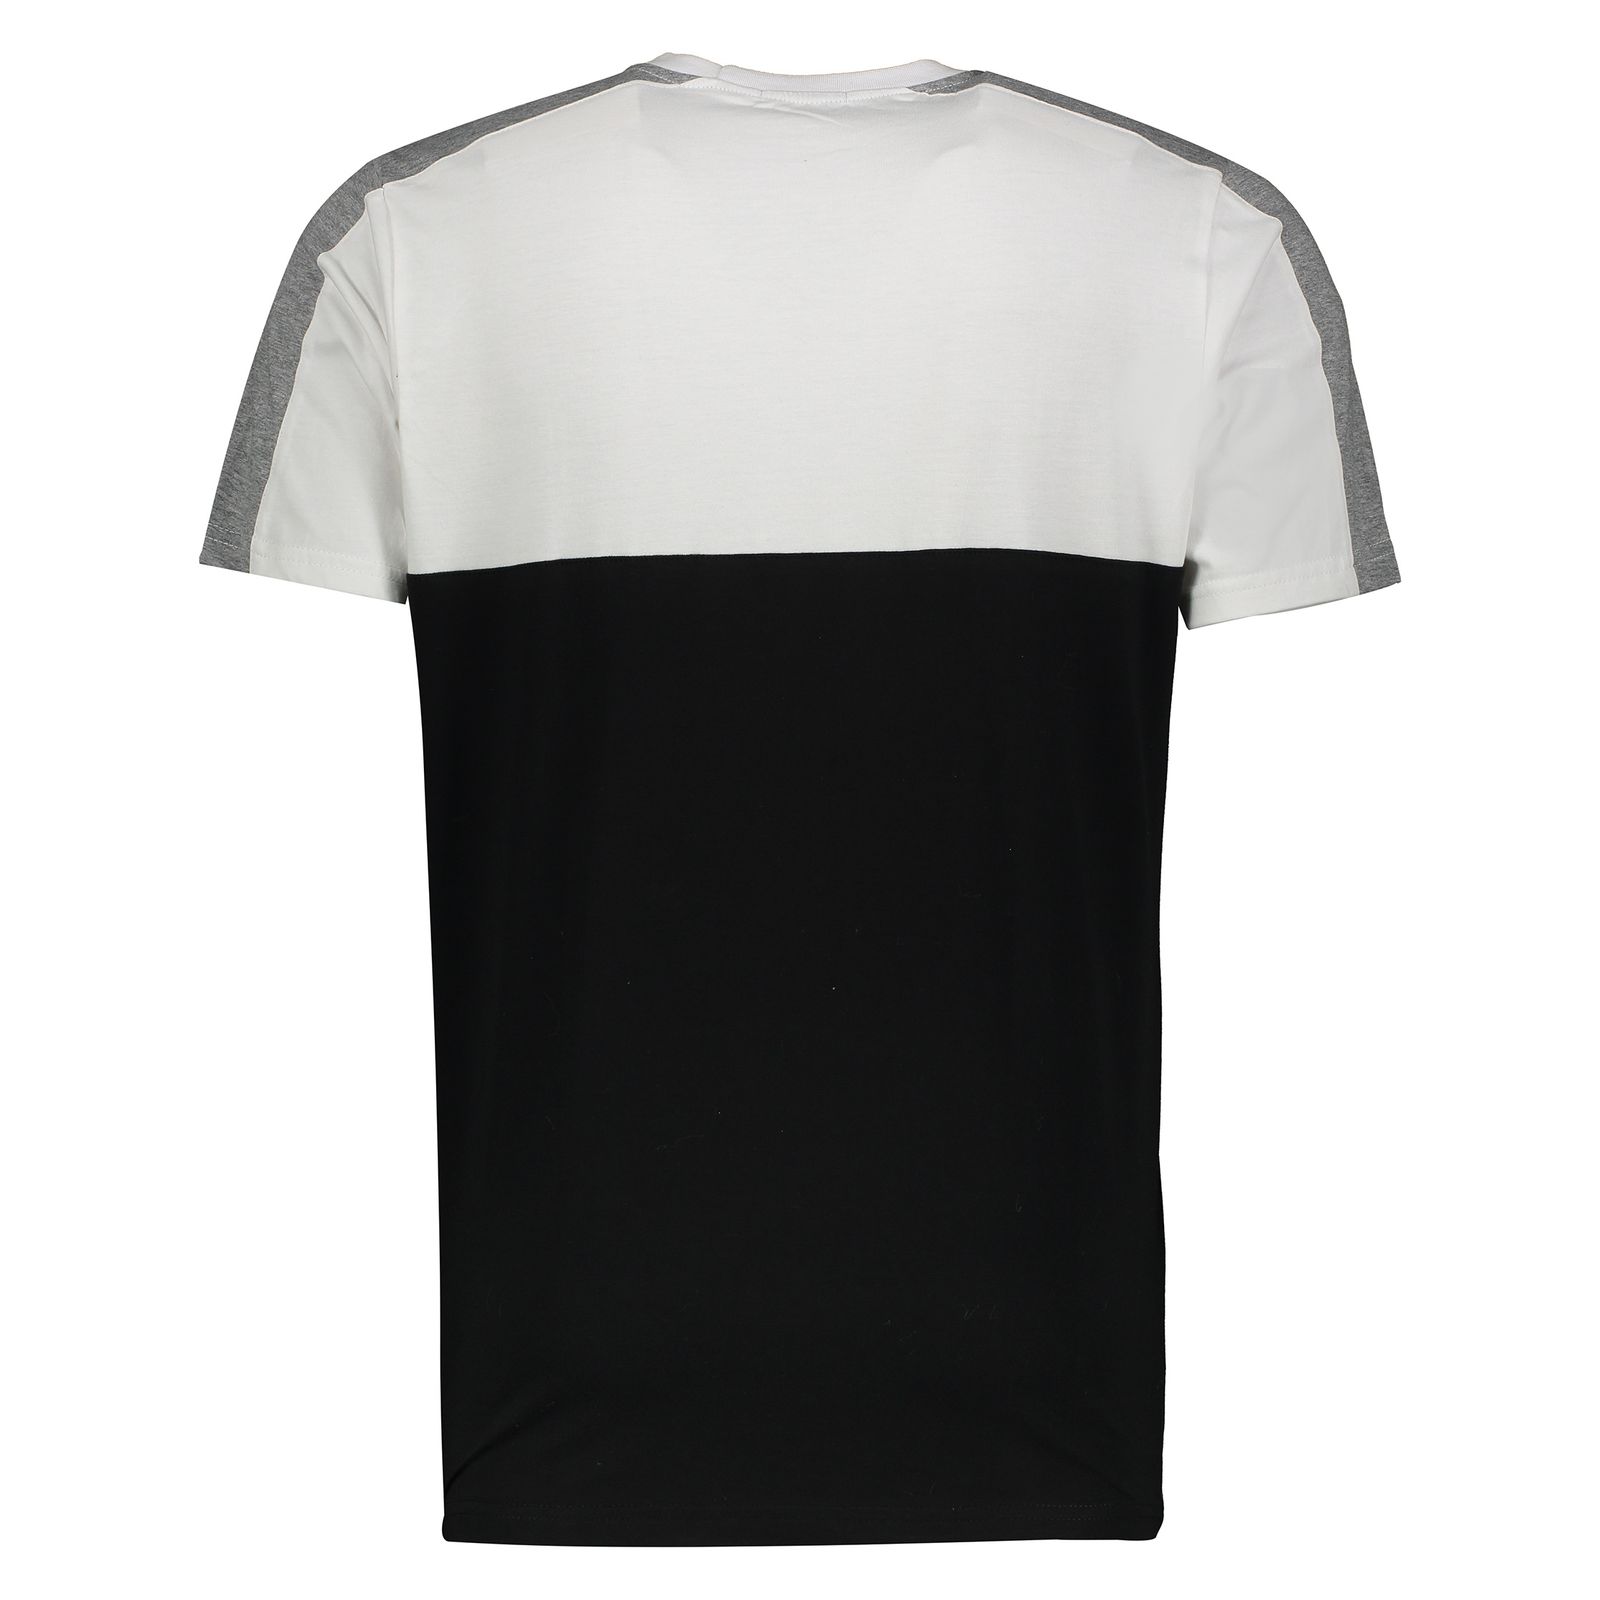 تی شرت مردانه آر ان اس مدل 1131109-01 - سفید - 3